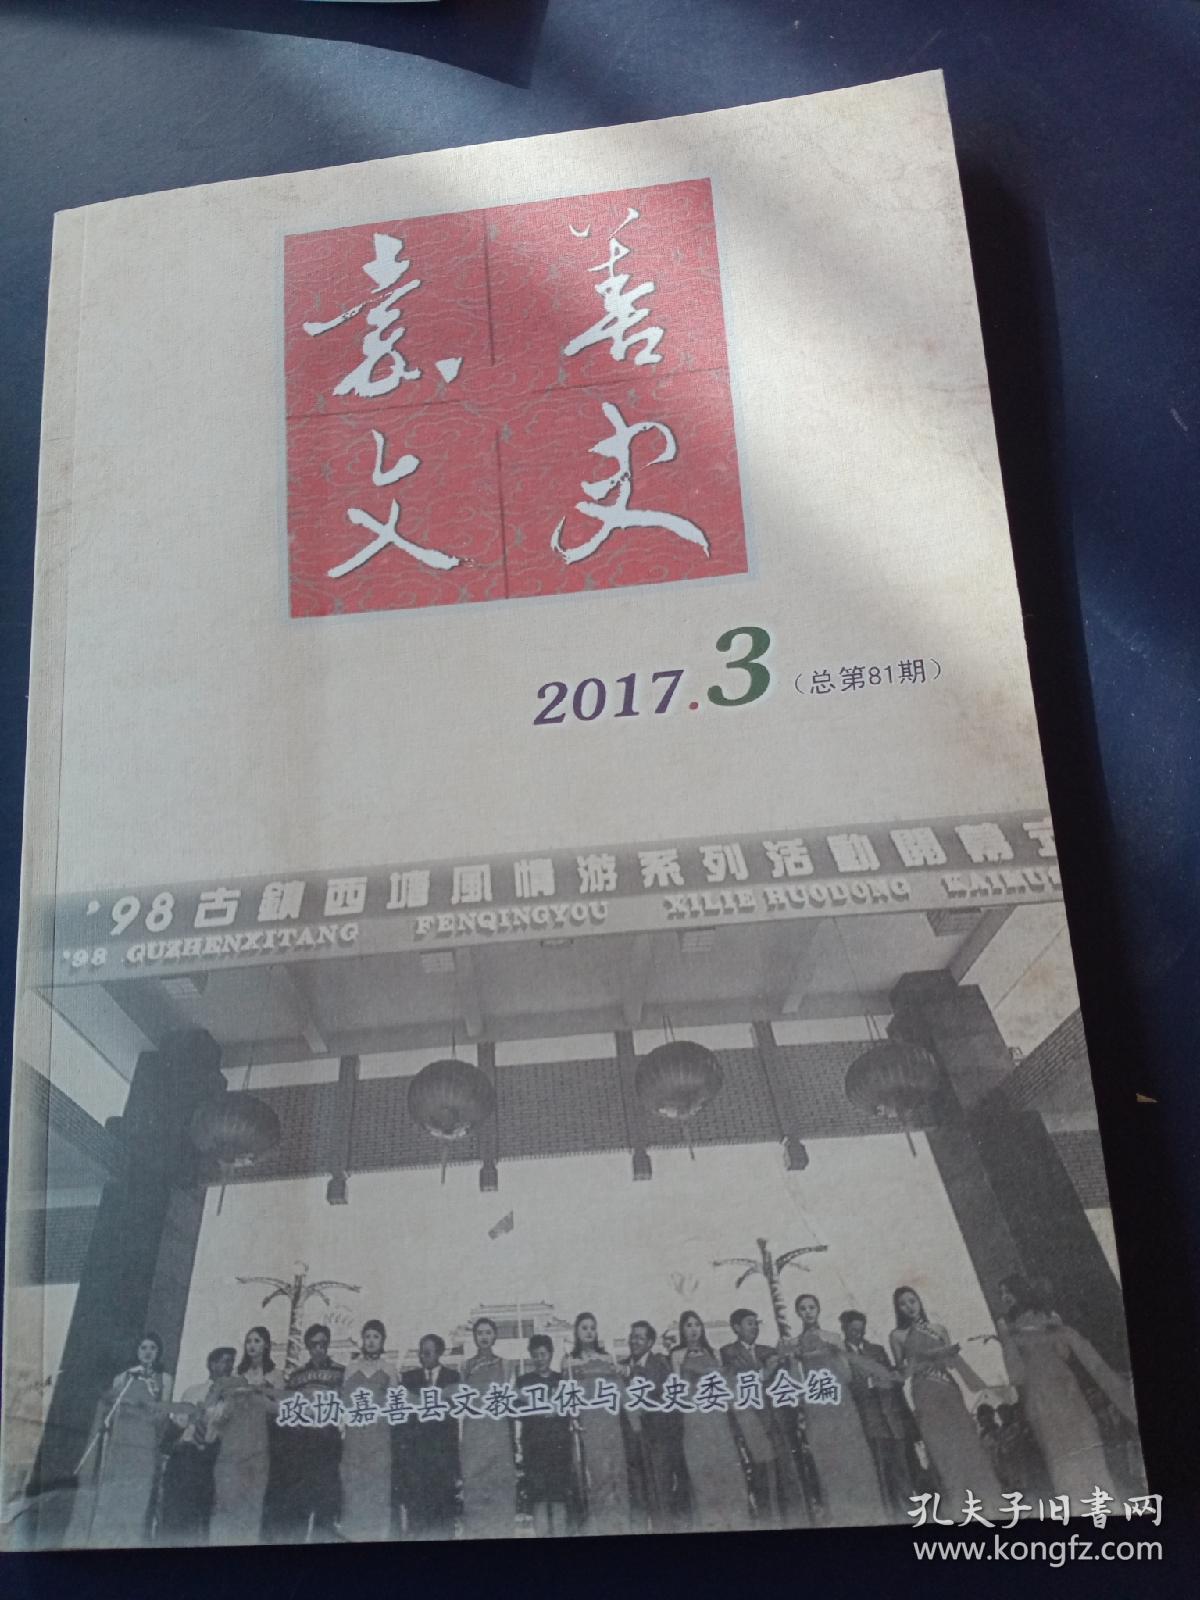 嘉善文史
2017-3